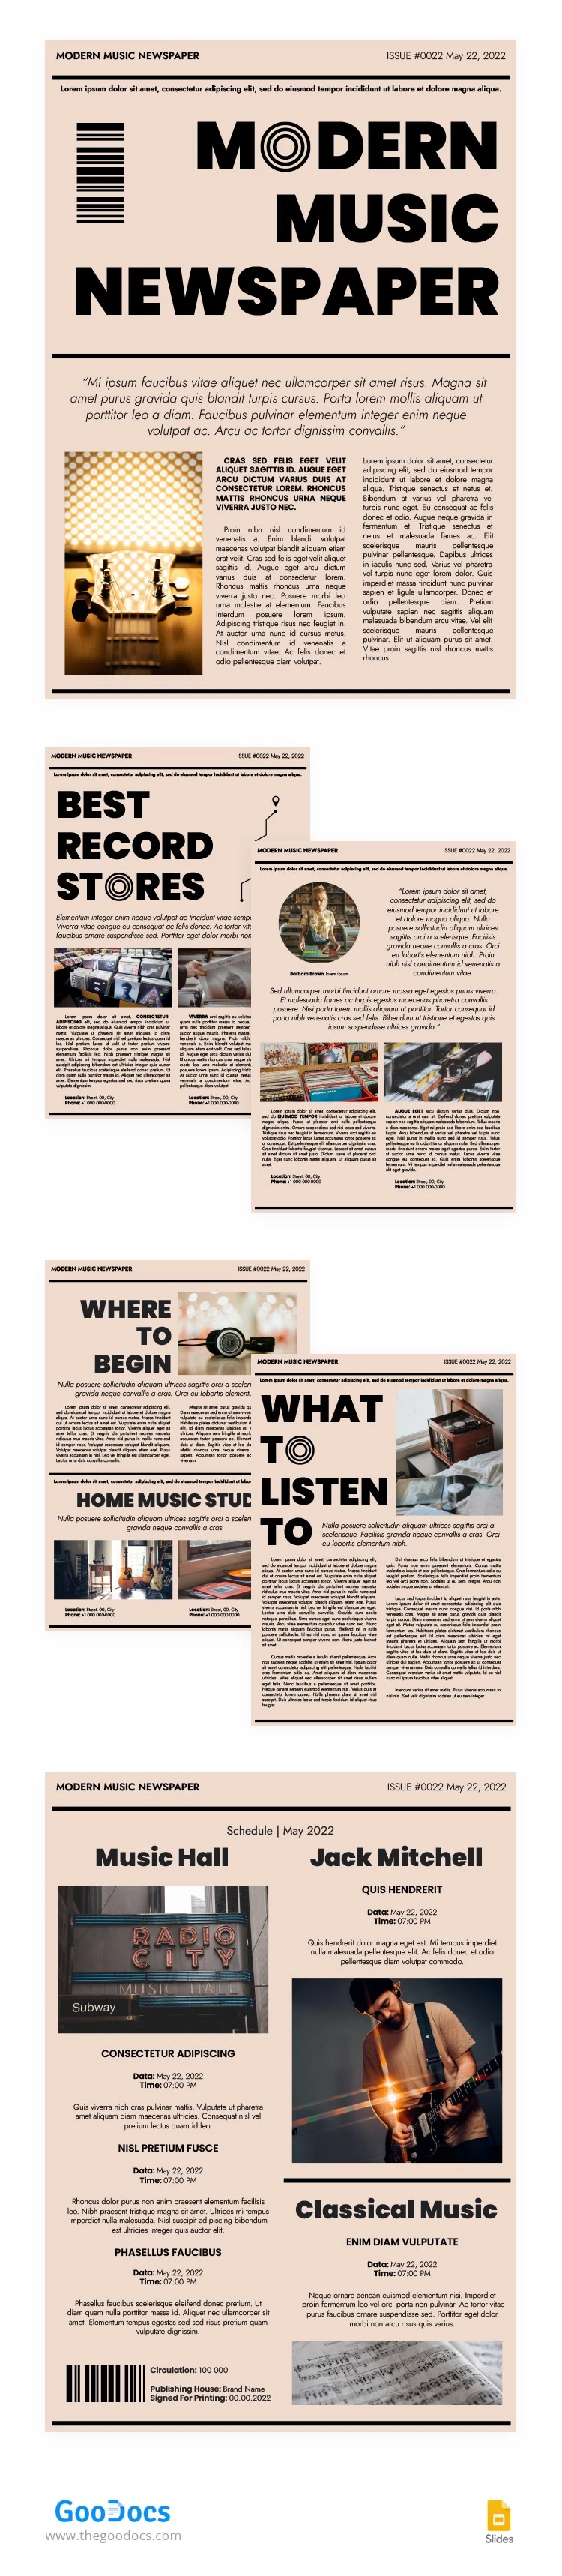 Moderne Musikzeitung - free Google Docs Template - 10063158